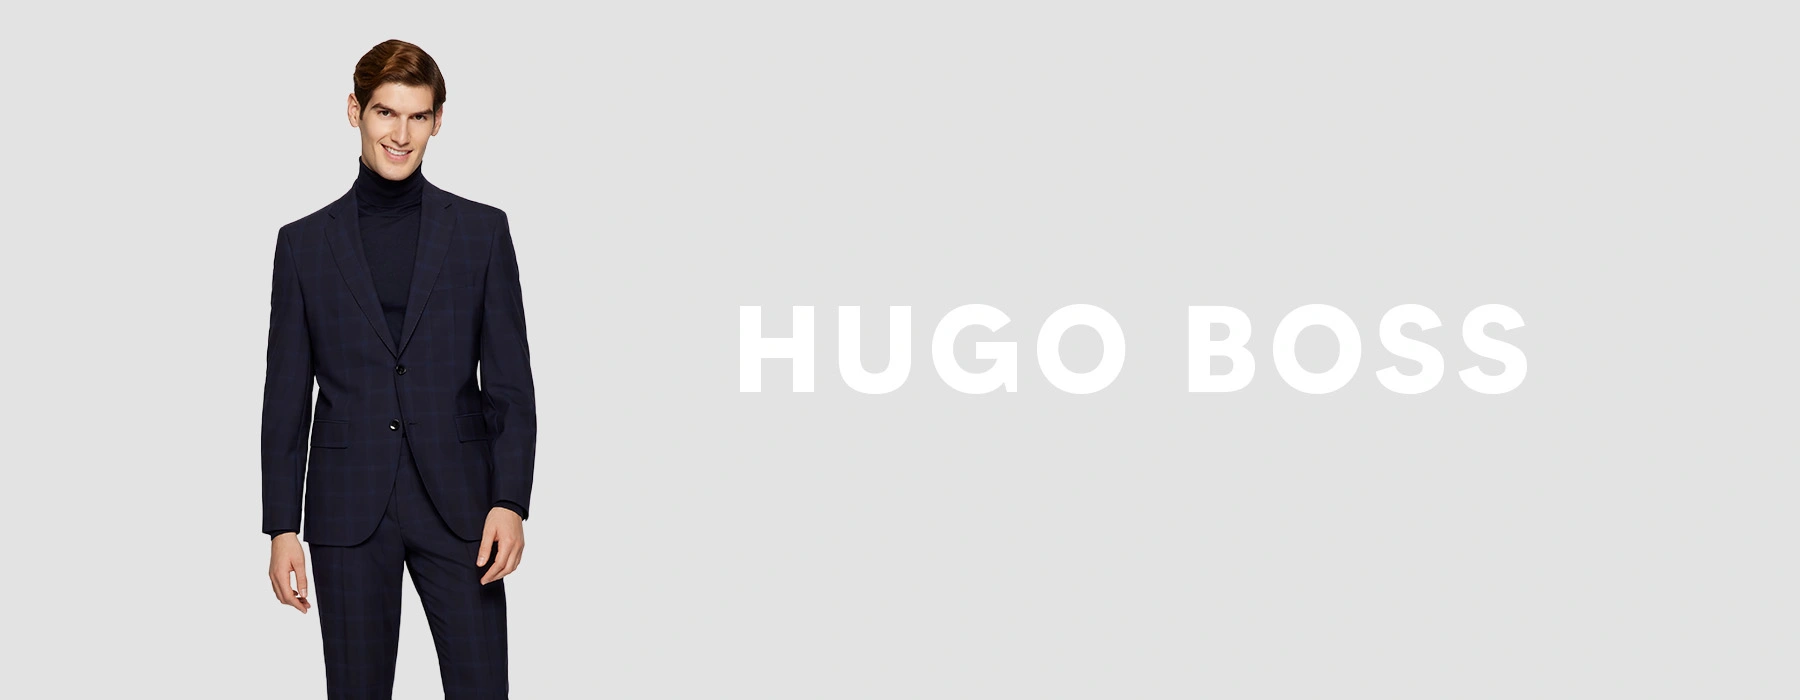 Categorie Veronderstellen Hectare Hugo Boss Kostuums | Online Kopen | Bos Men Shop